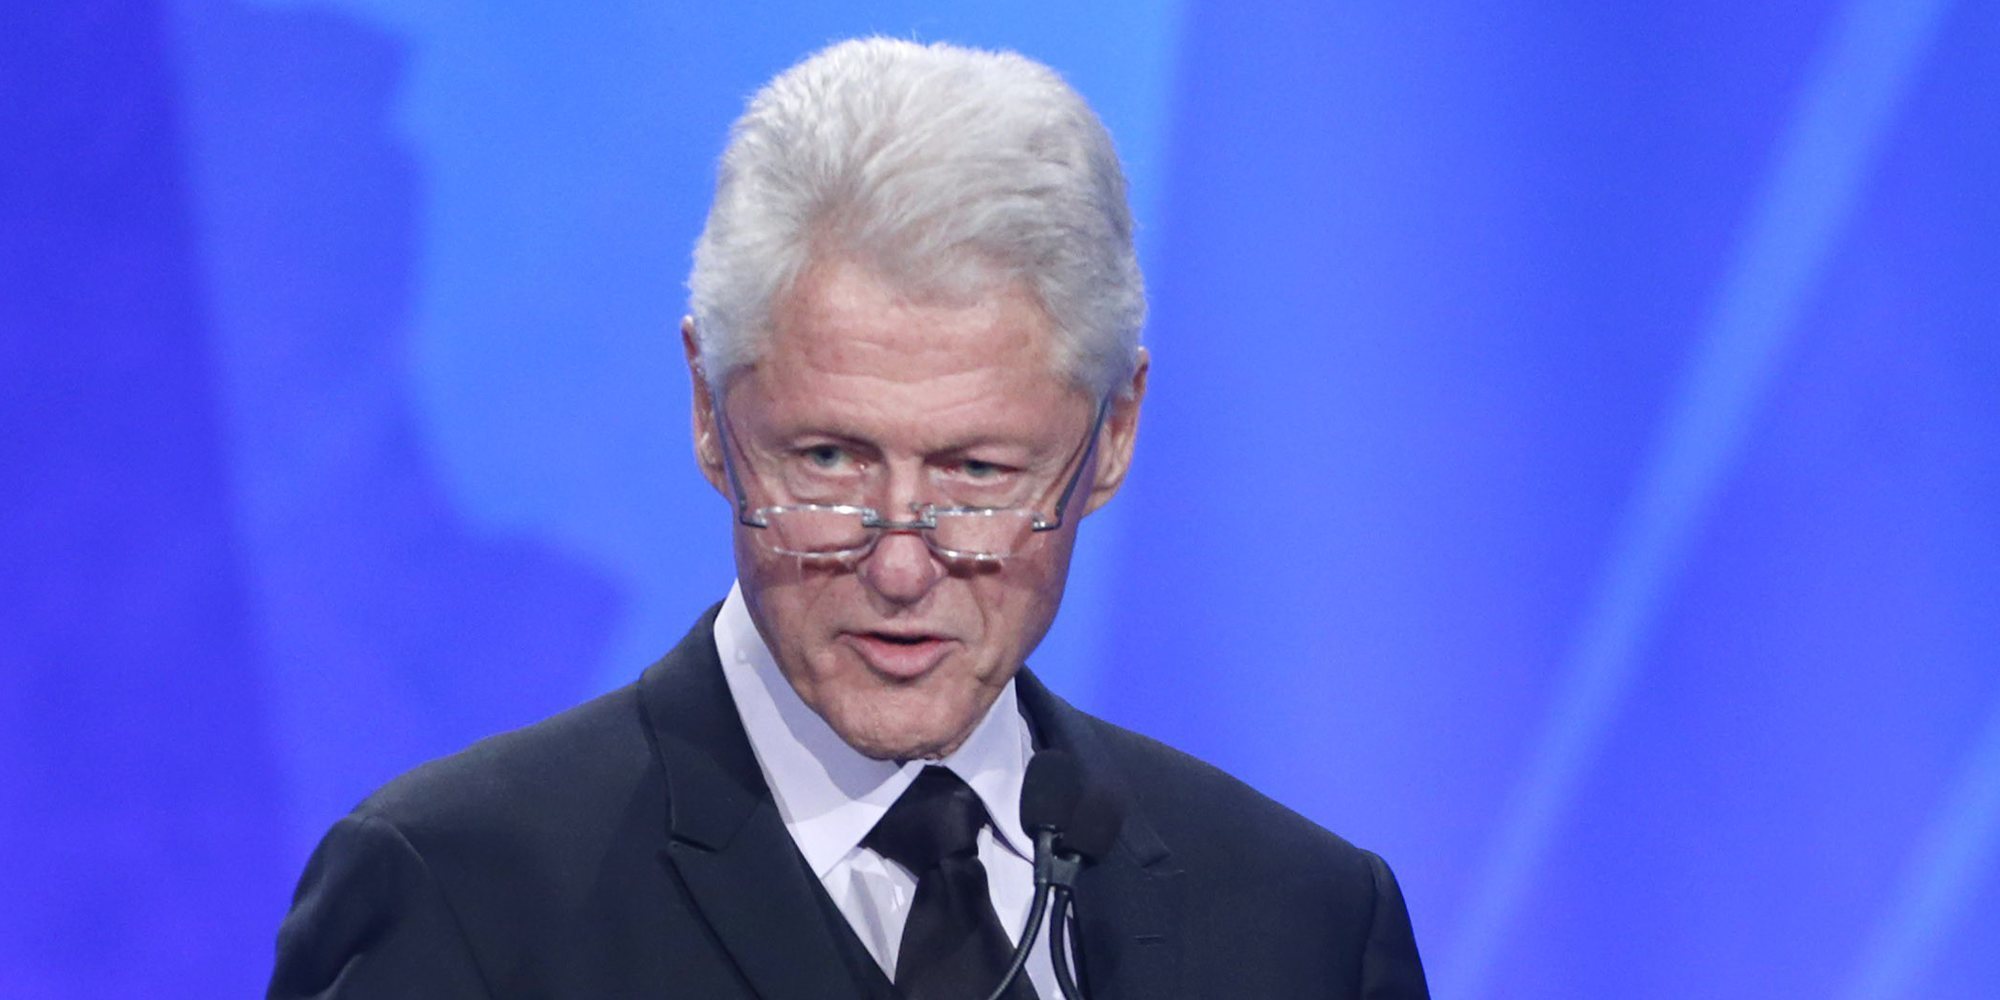 Salen a la luz unas íntimas fotos de Bill Clinton recibiendo un masaje de una de las víctimas de Jeffrey Epstein